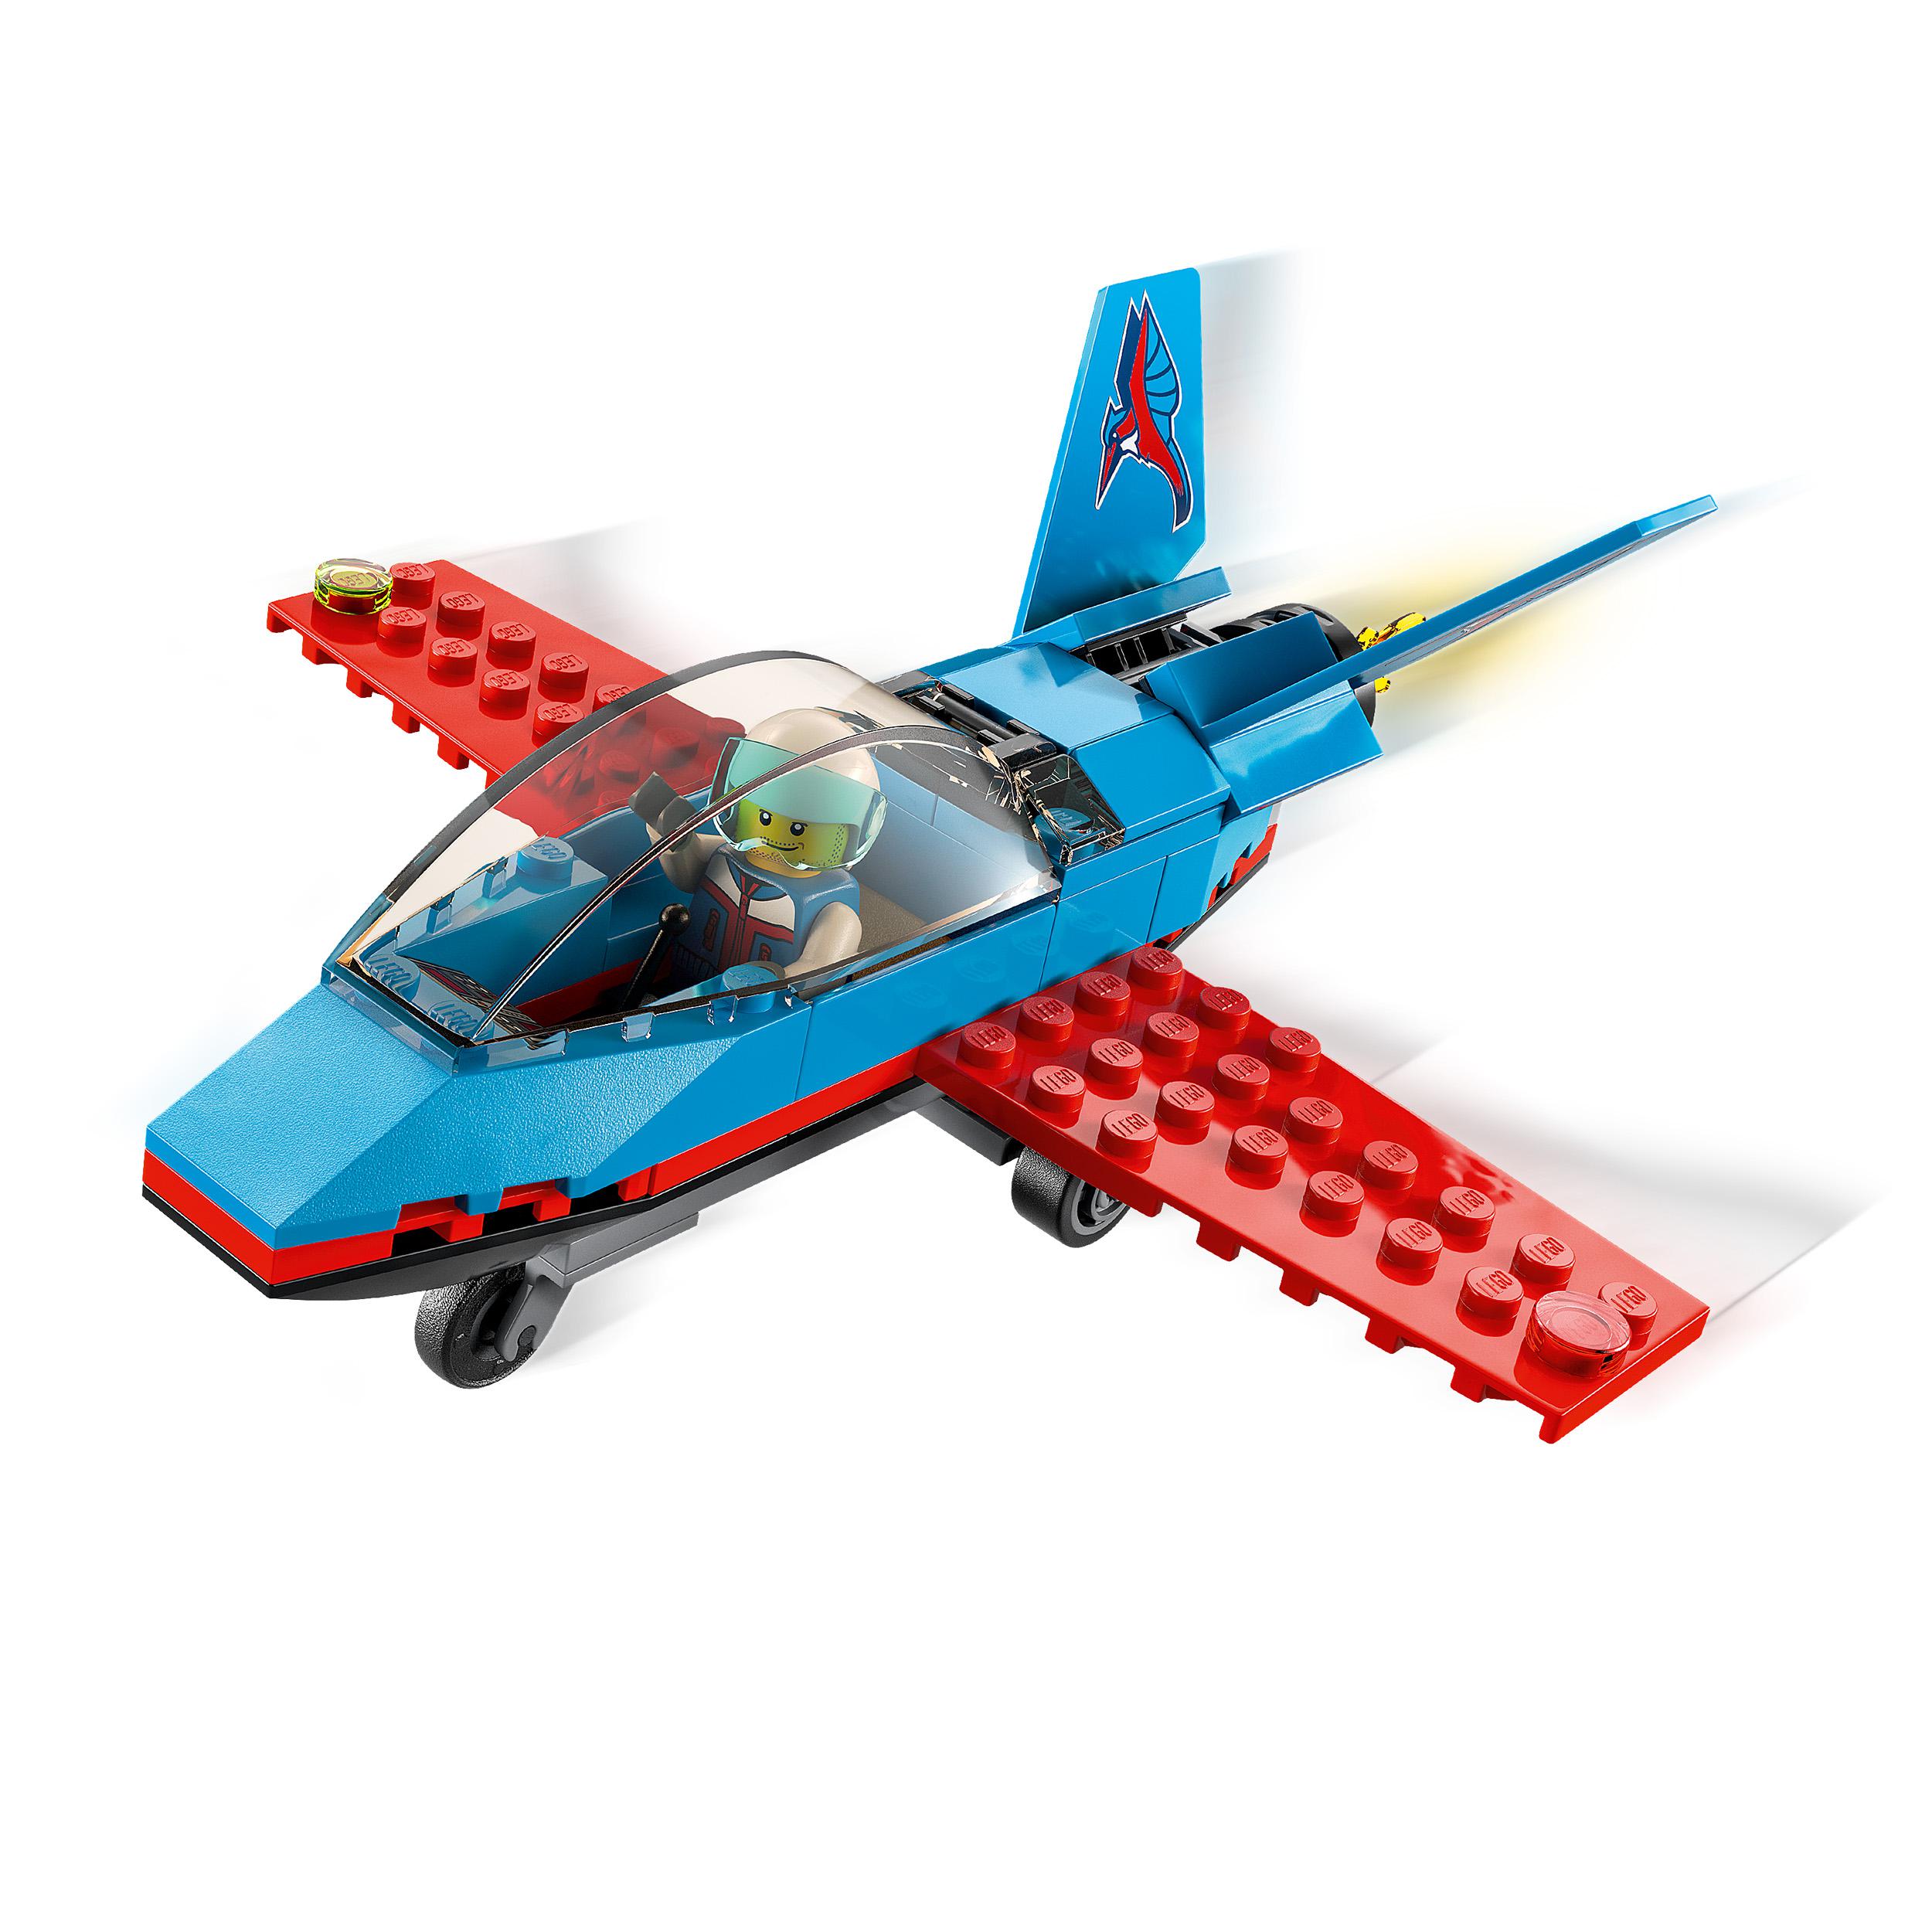 Lego city great vehicles aereo acrobatico, giocattolo con minifigure del pilota, idea regalo per bambini di 5+ anni, 60323 - LEGO CITY, Lego